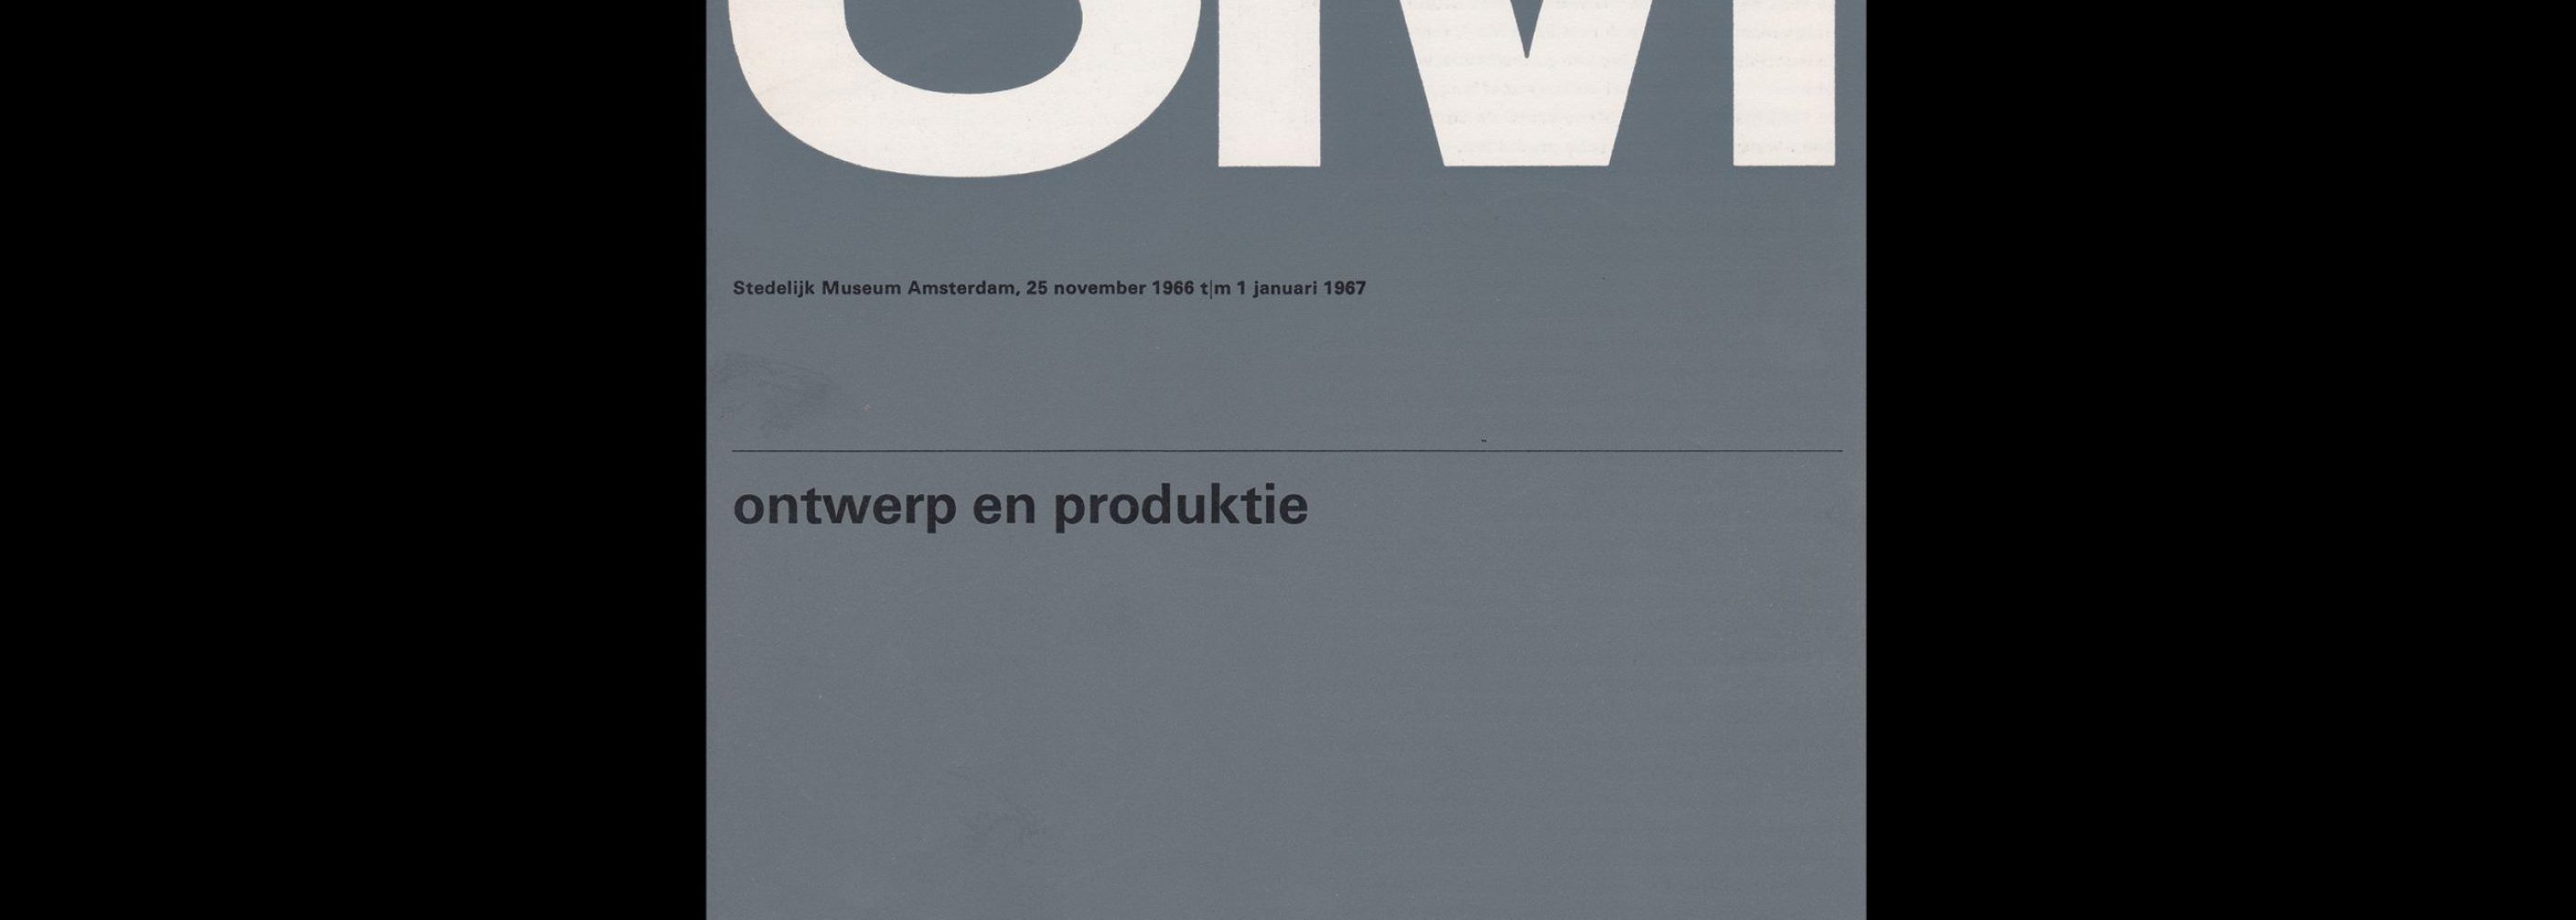 Ontwerp en Produktie, Stedelijk Museum, Amsterdam, 1966 designed by Wim Crouwel (Total Design)